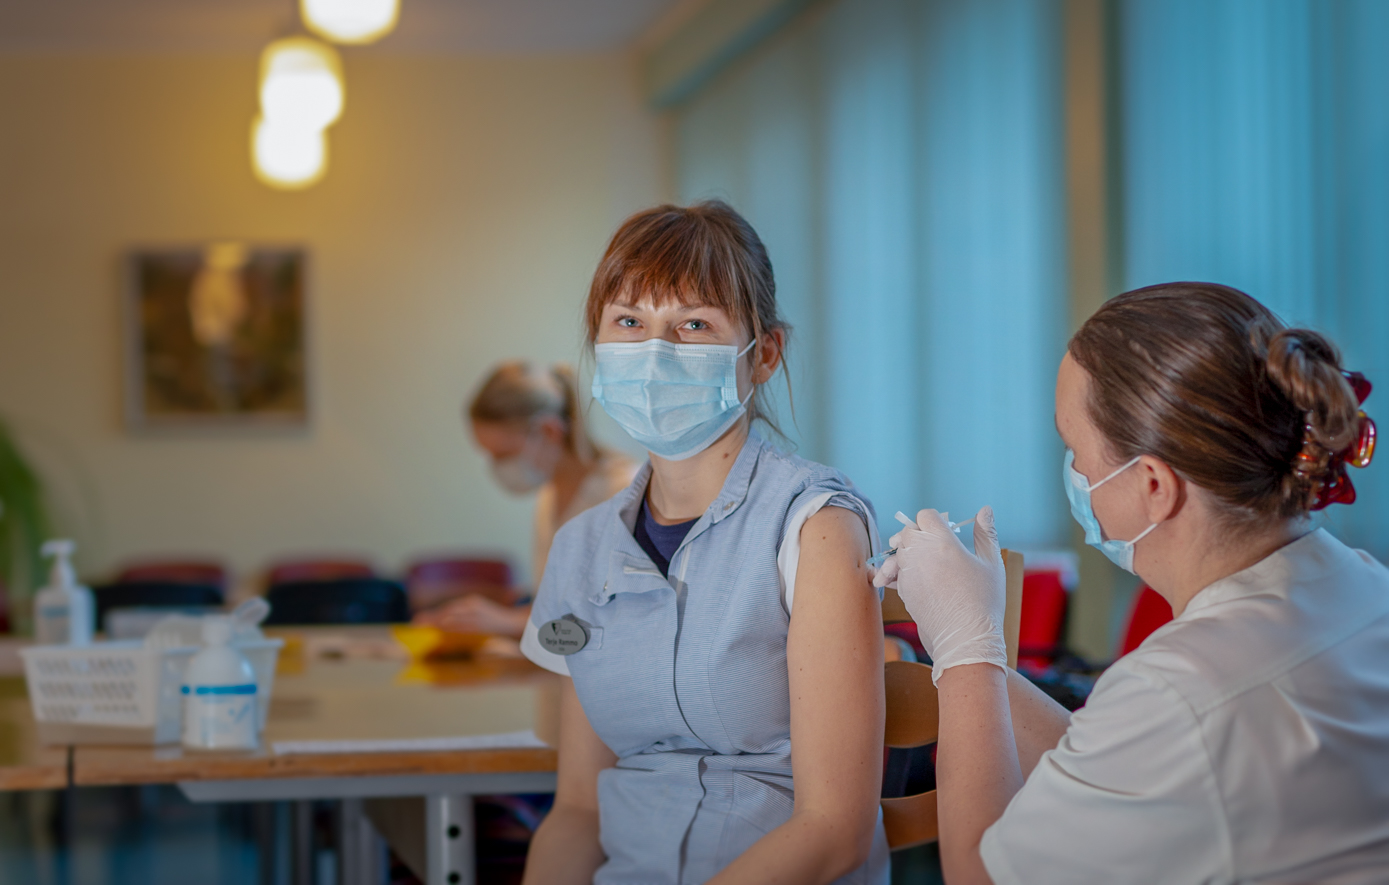 Erakorralise meditsiini õena töötav Terje Rammo oli täna esimene haigla töötajate seas, keda immuniseeriti SARS-CoV-2 vaktsiiniga. Foto: AIGAR NAGEL